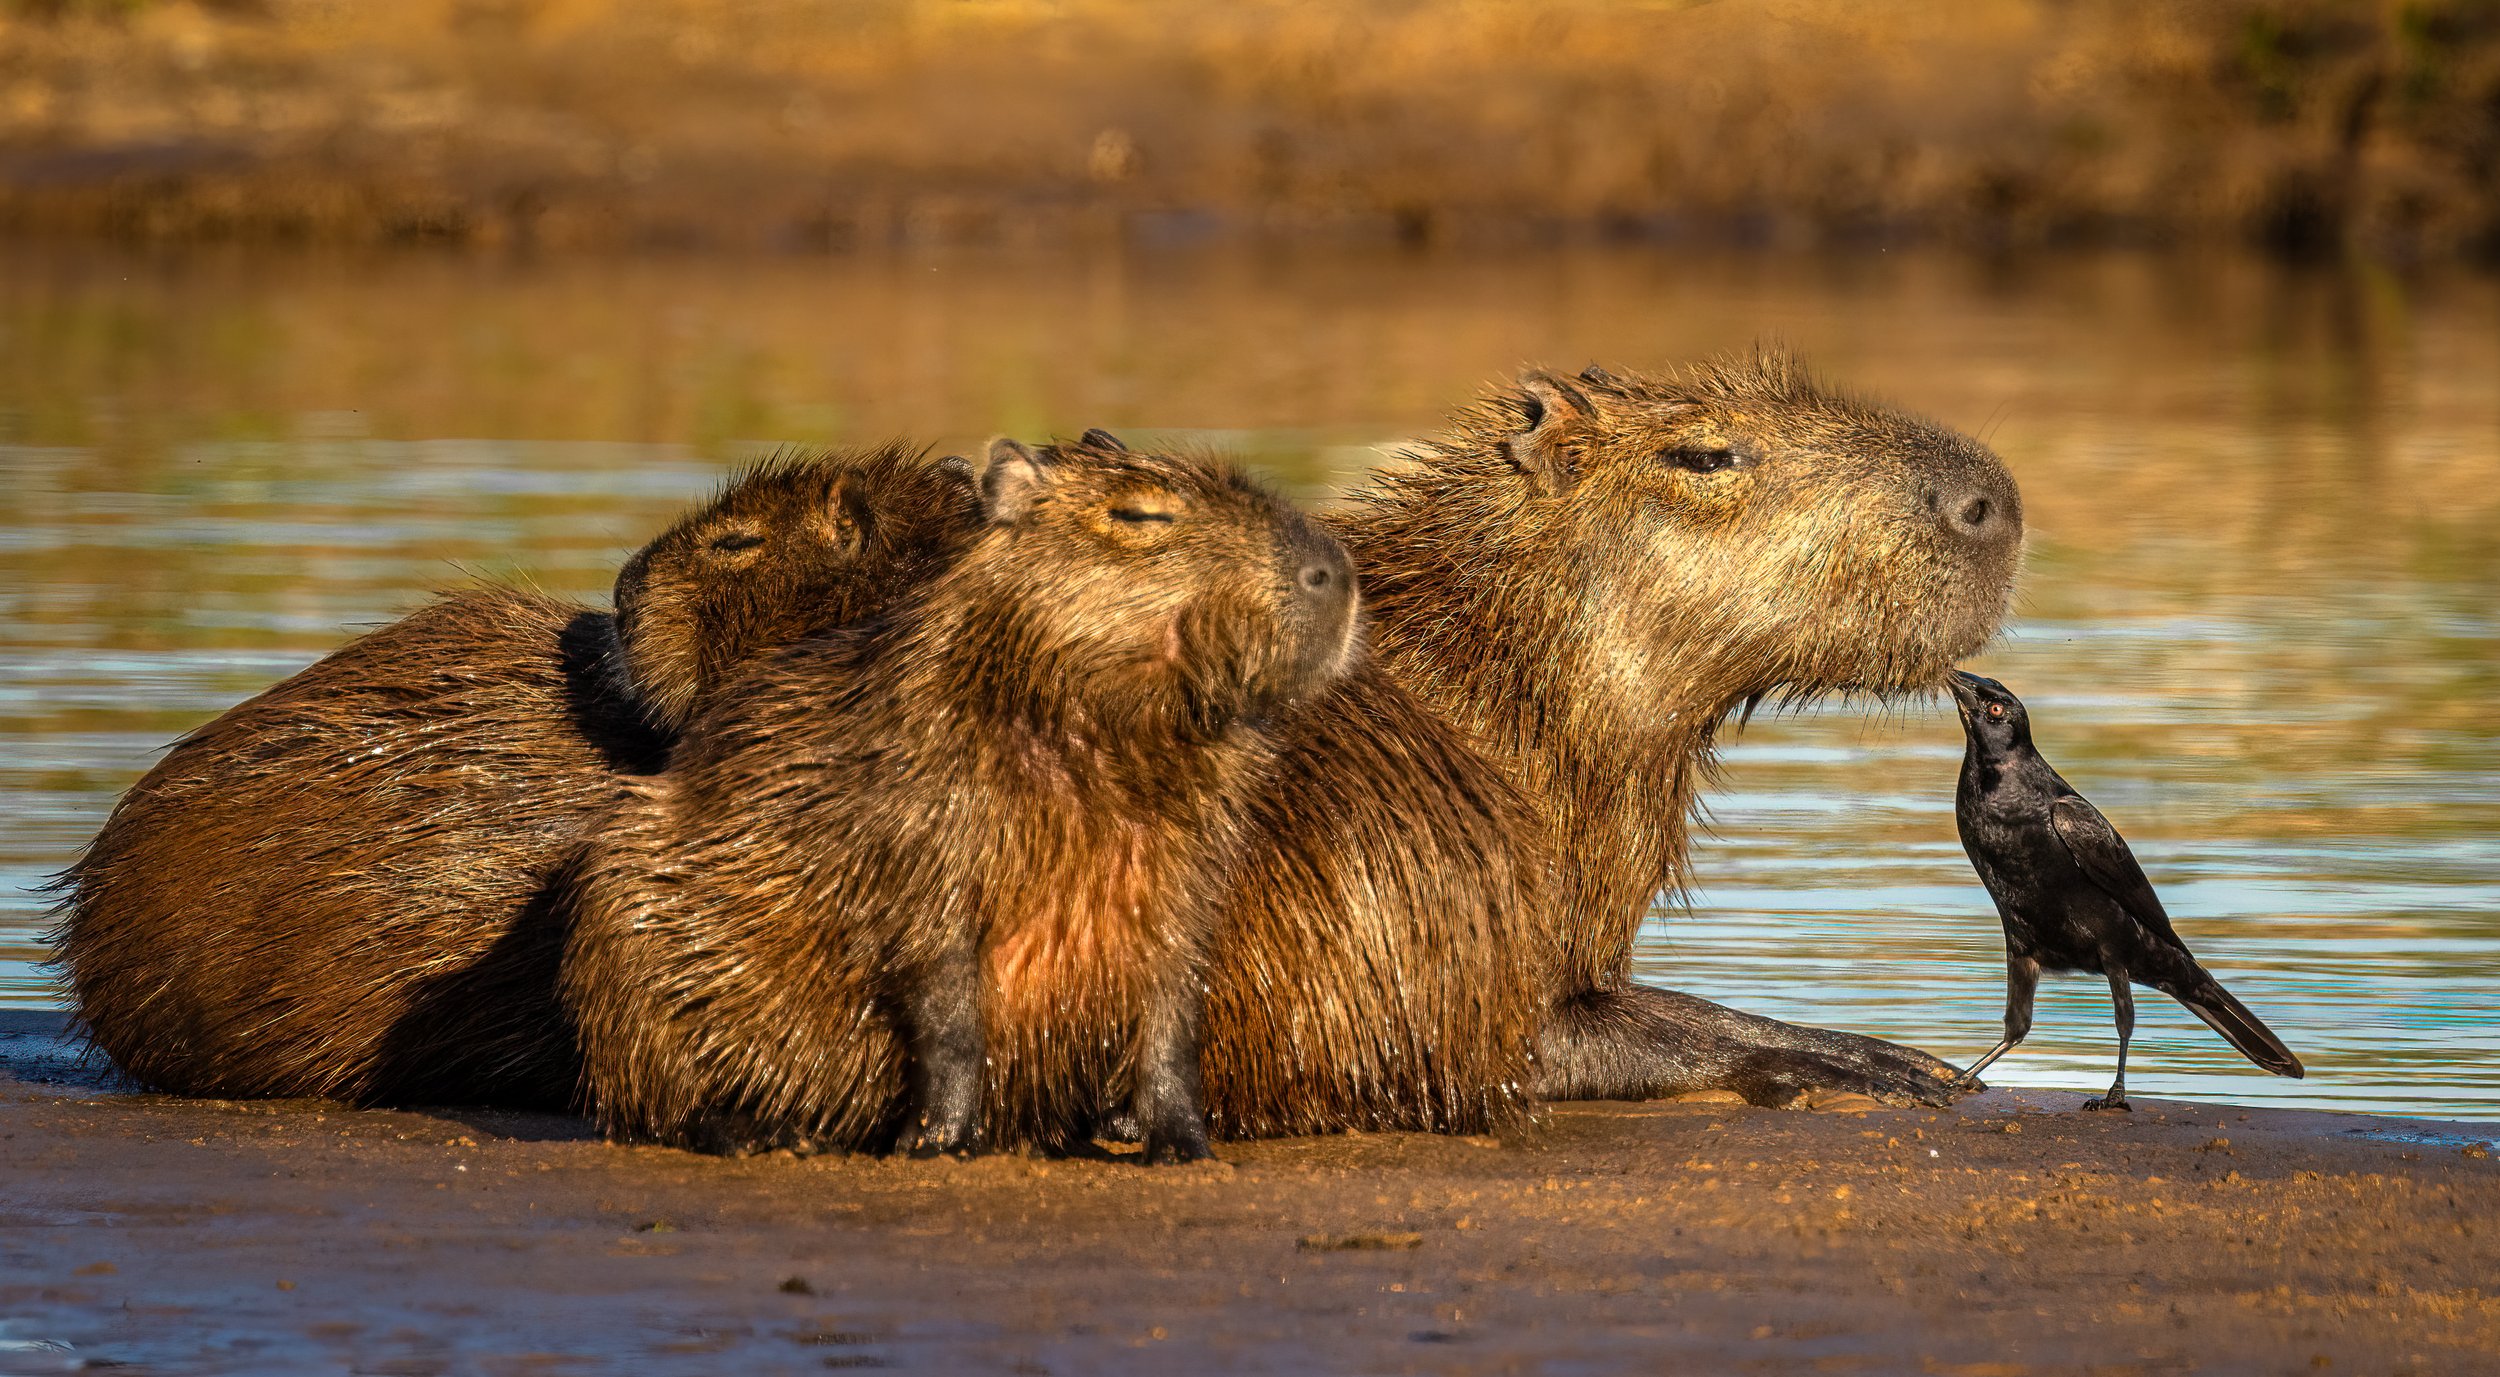 HM - Capybara and Smooth-billed Ani, Pantanal, Brazil